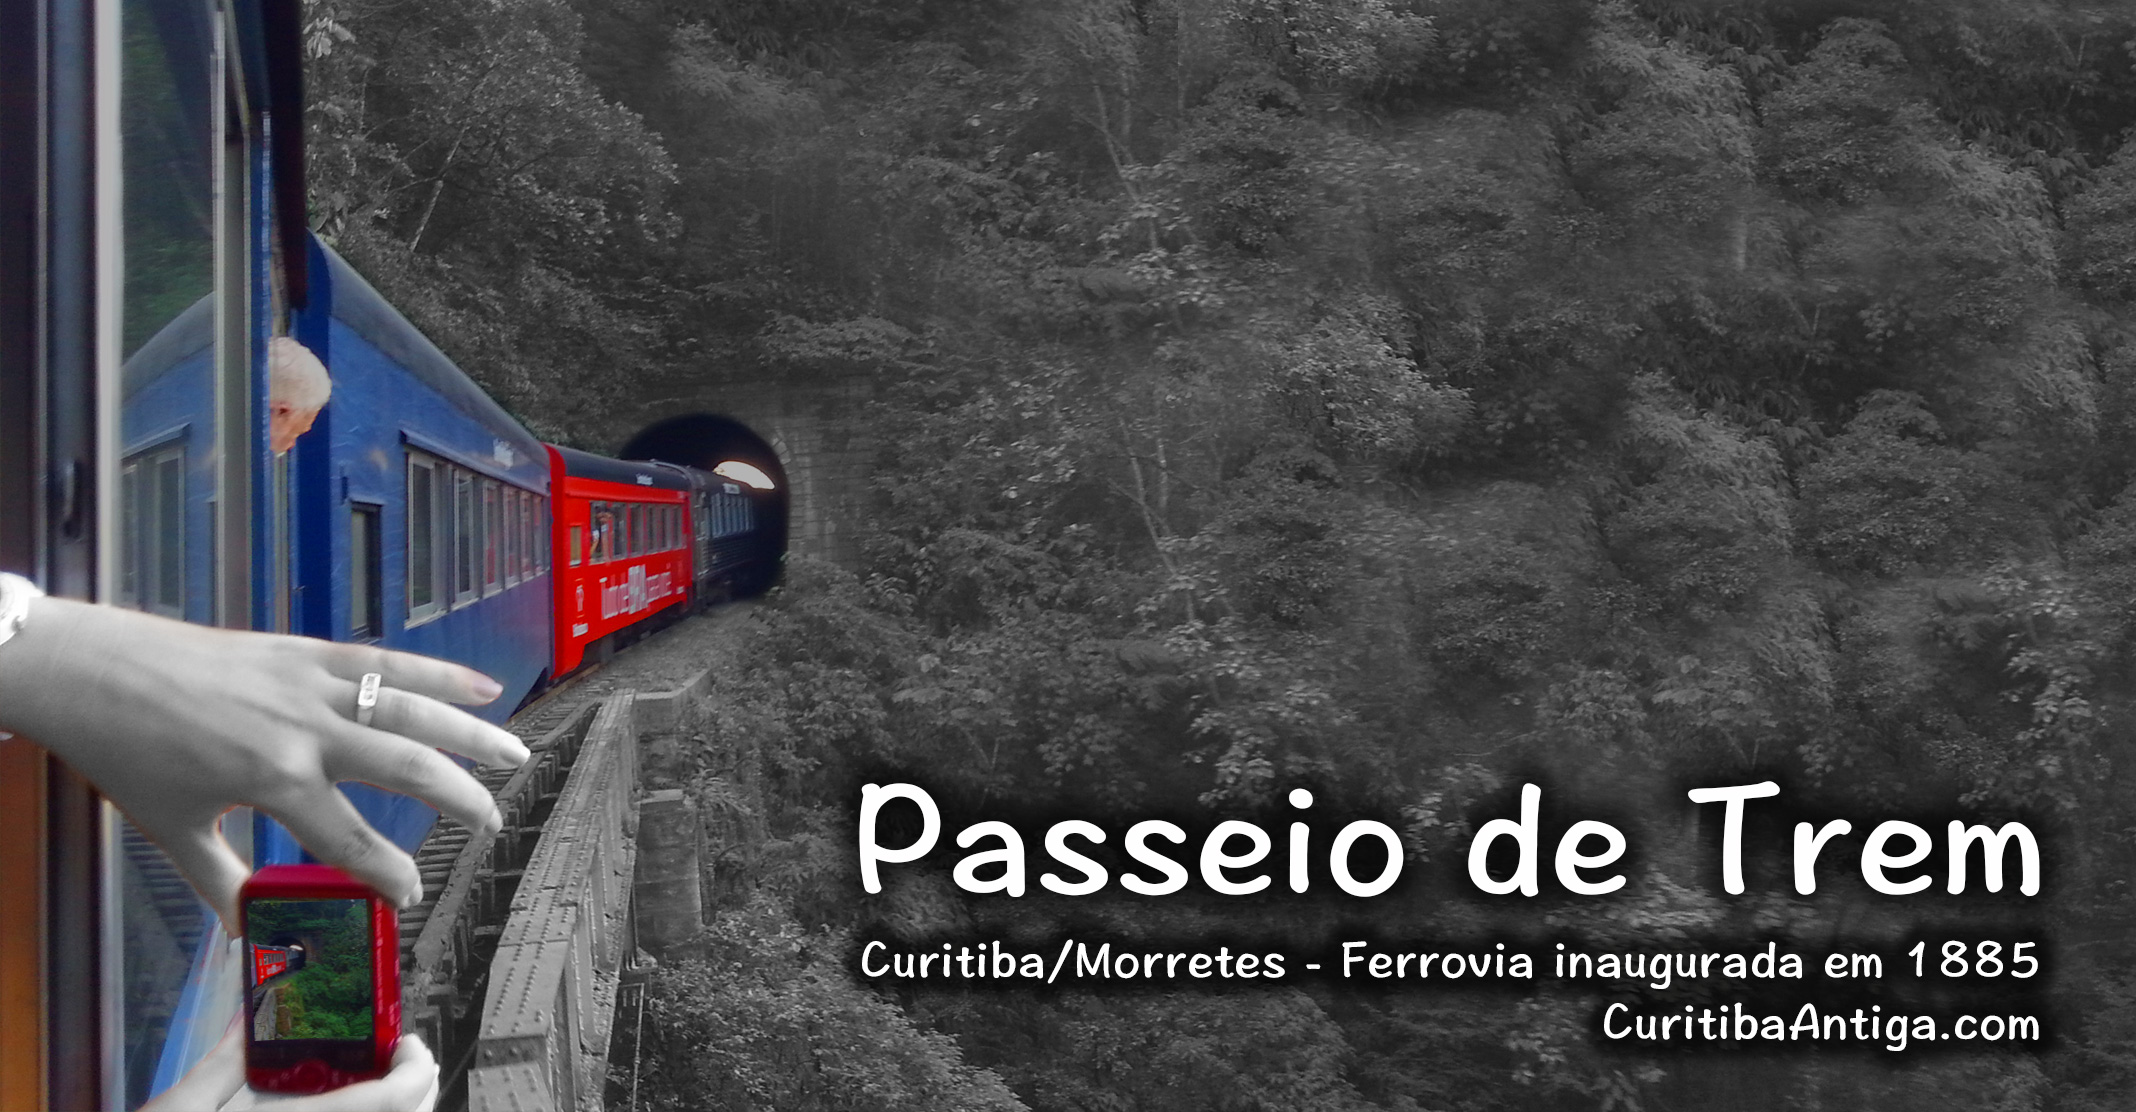 [VIDEO] Passeio de Trem Curitiba Morretes - Melhores Momentos